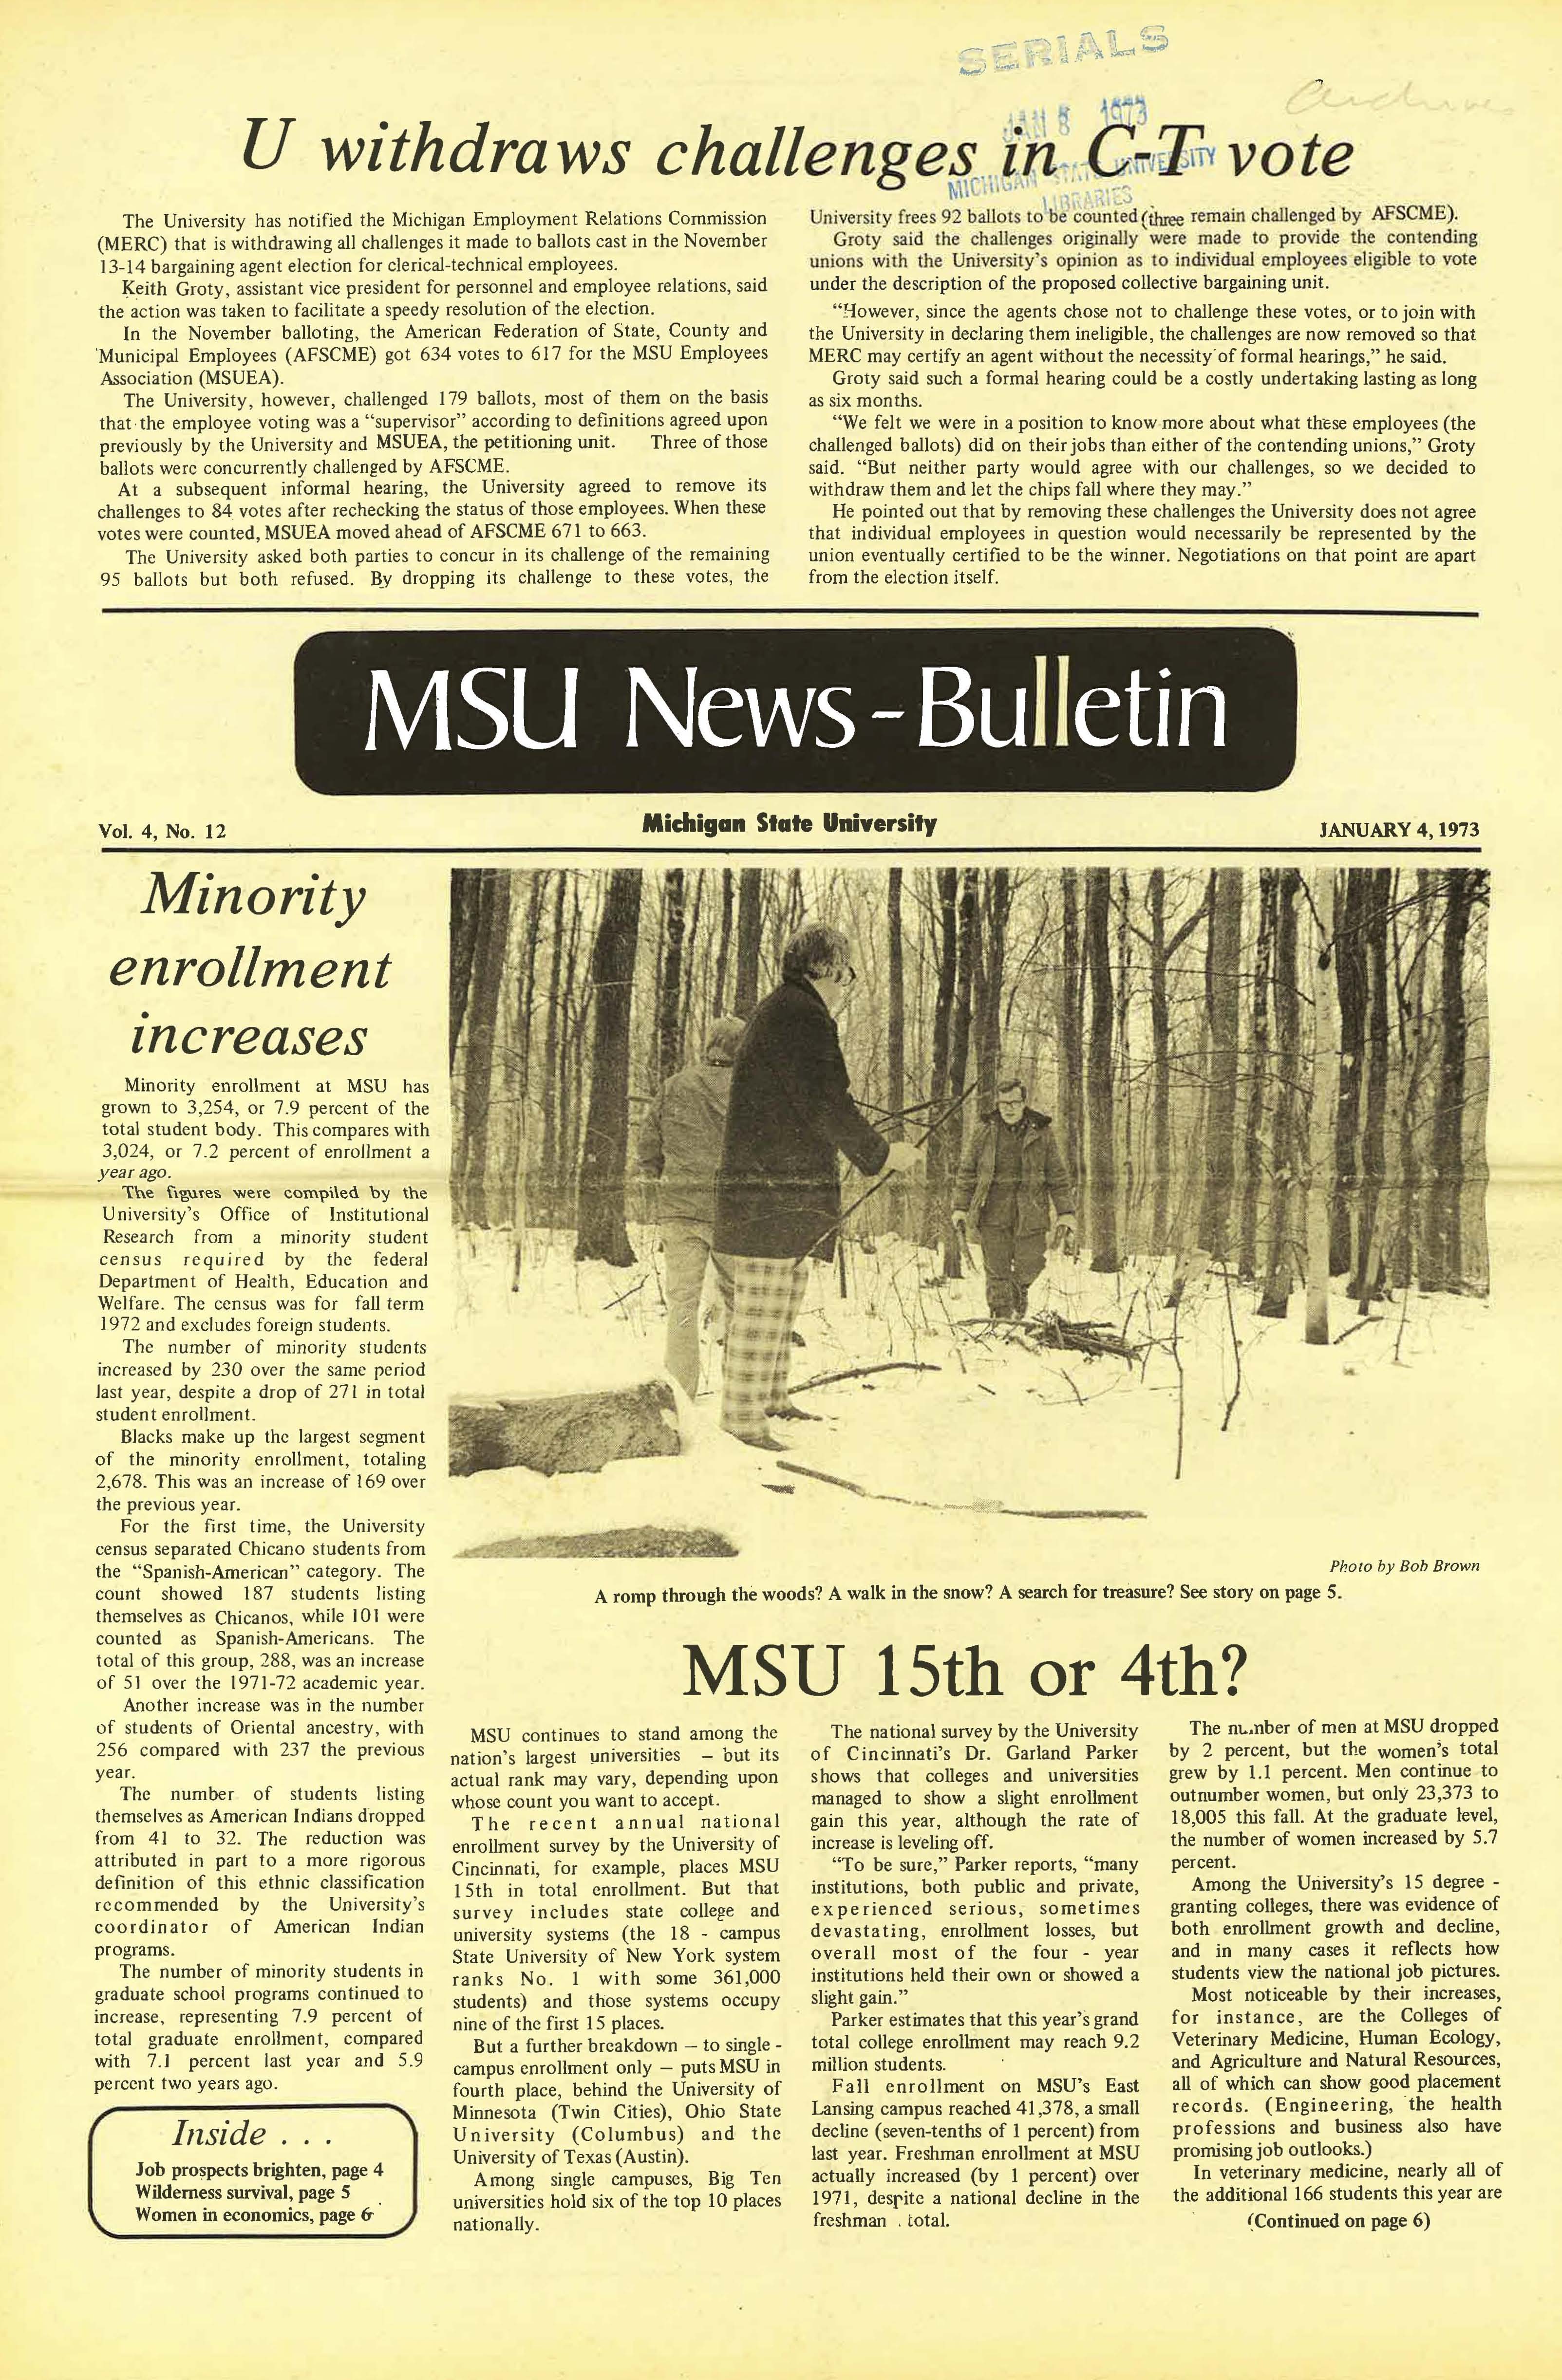 MSU News Bulletin, vol. 4, No. 24, April 12, 1973